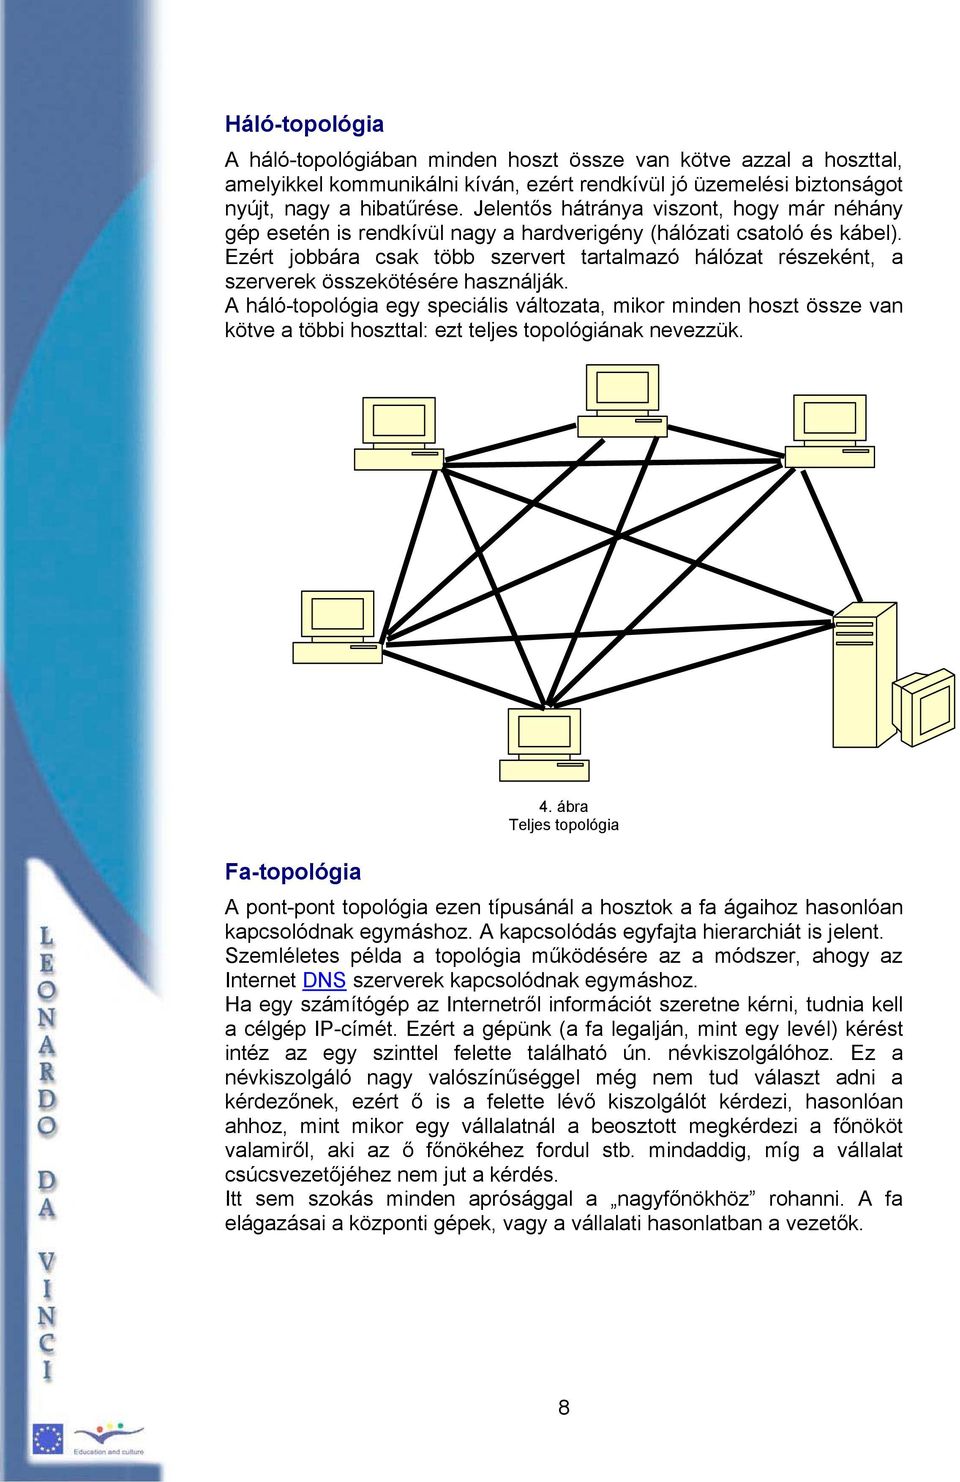 Ezért jobbára csak több szervert tartalmazó hálózat részeként, a szerverek összekötésére használják.